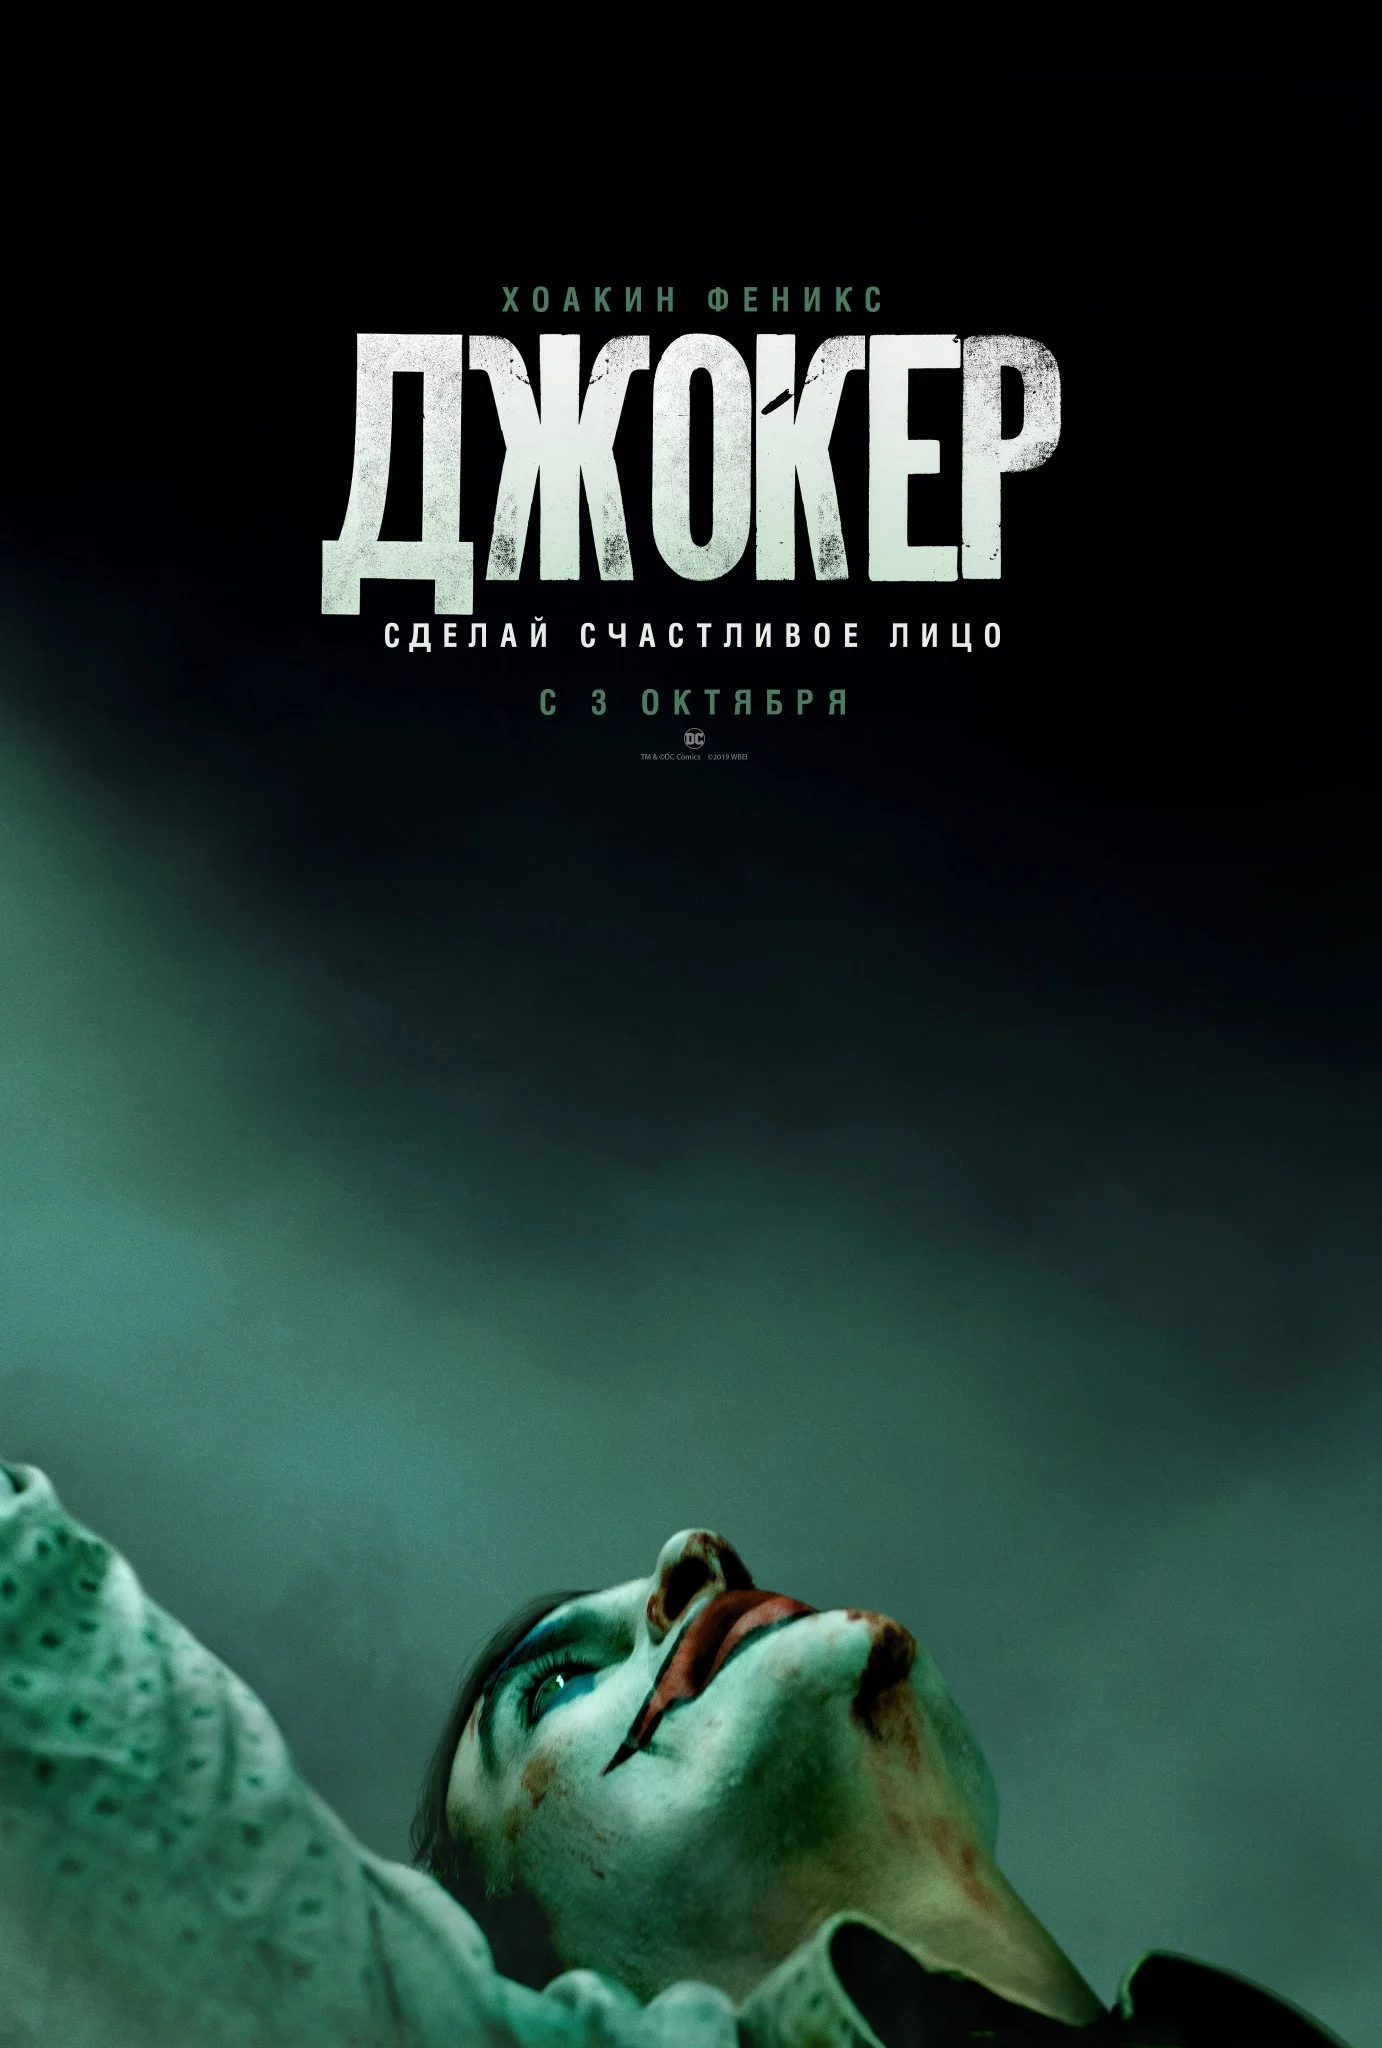 «Сделай счастливое лицо»: первый постер и трейлер «Джокера» с Хоакином Фениксом - фото 2